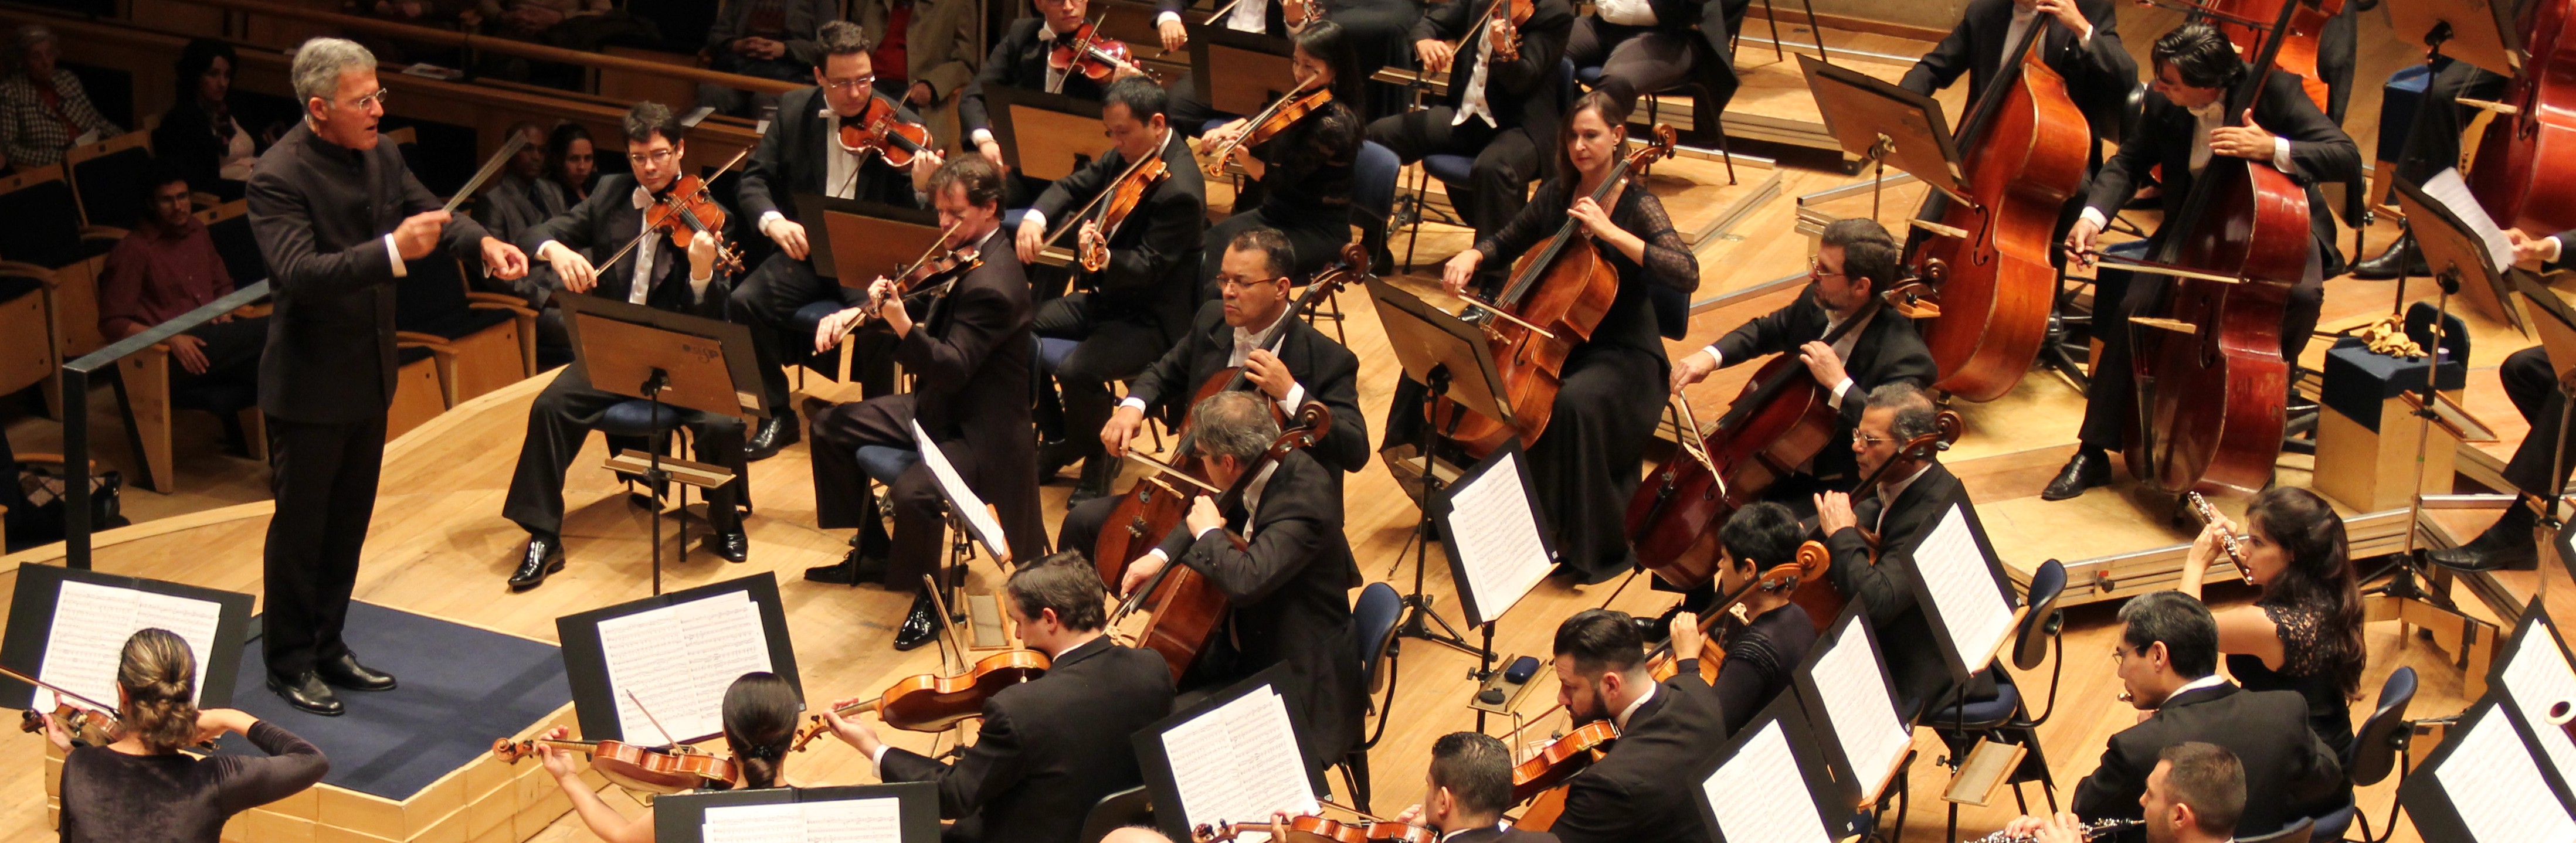 Convidados mexicanos integram a programação do segundo semestre da Orquestra Sinfônica da USP